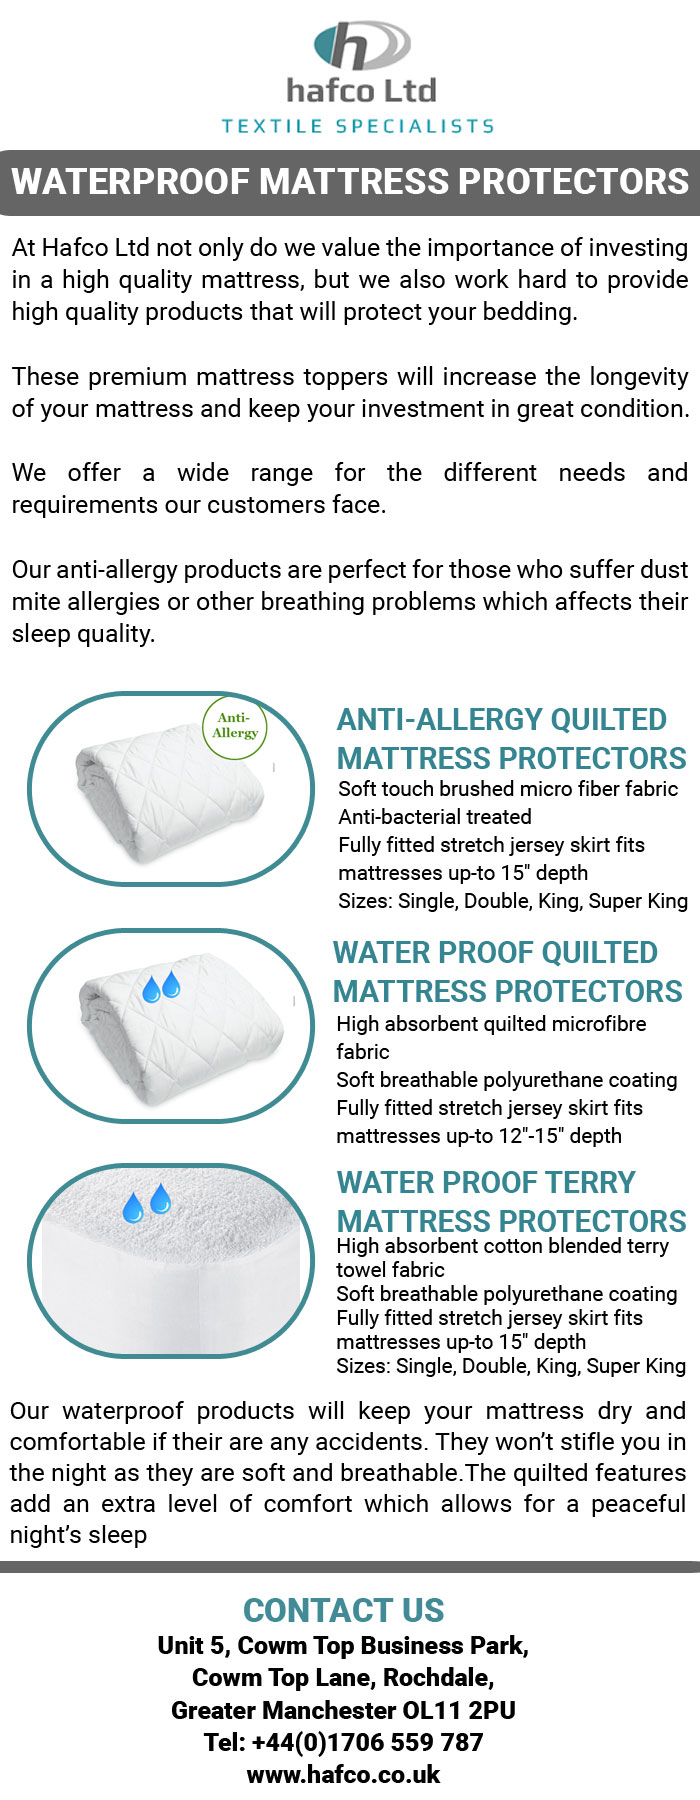 Waterproof mattress protectors.jpg  by hafcoltduk